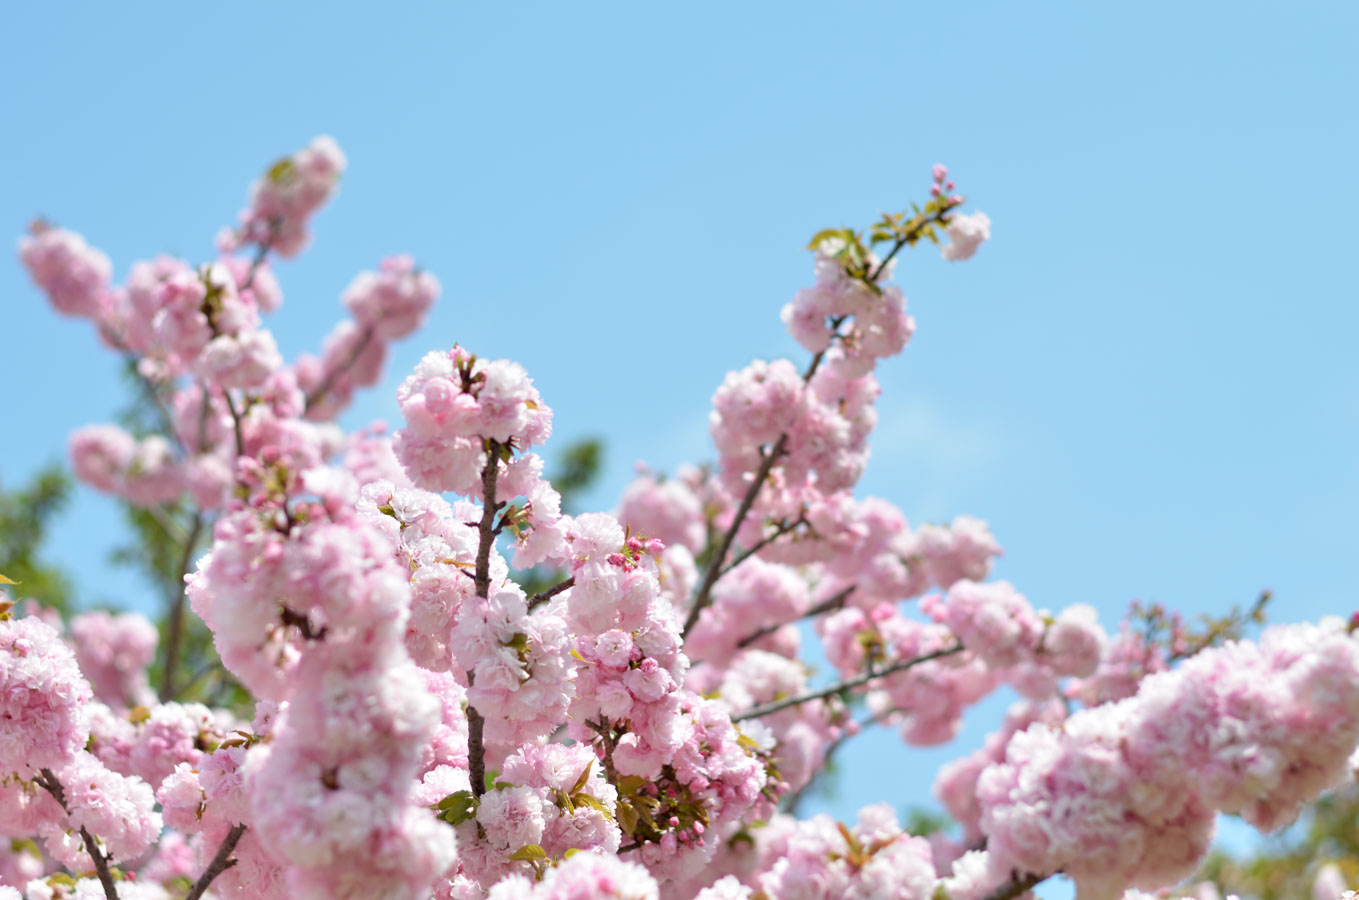 【スナップ撮影】まだまだ、桜を楽しもう